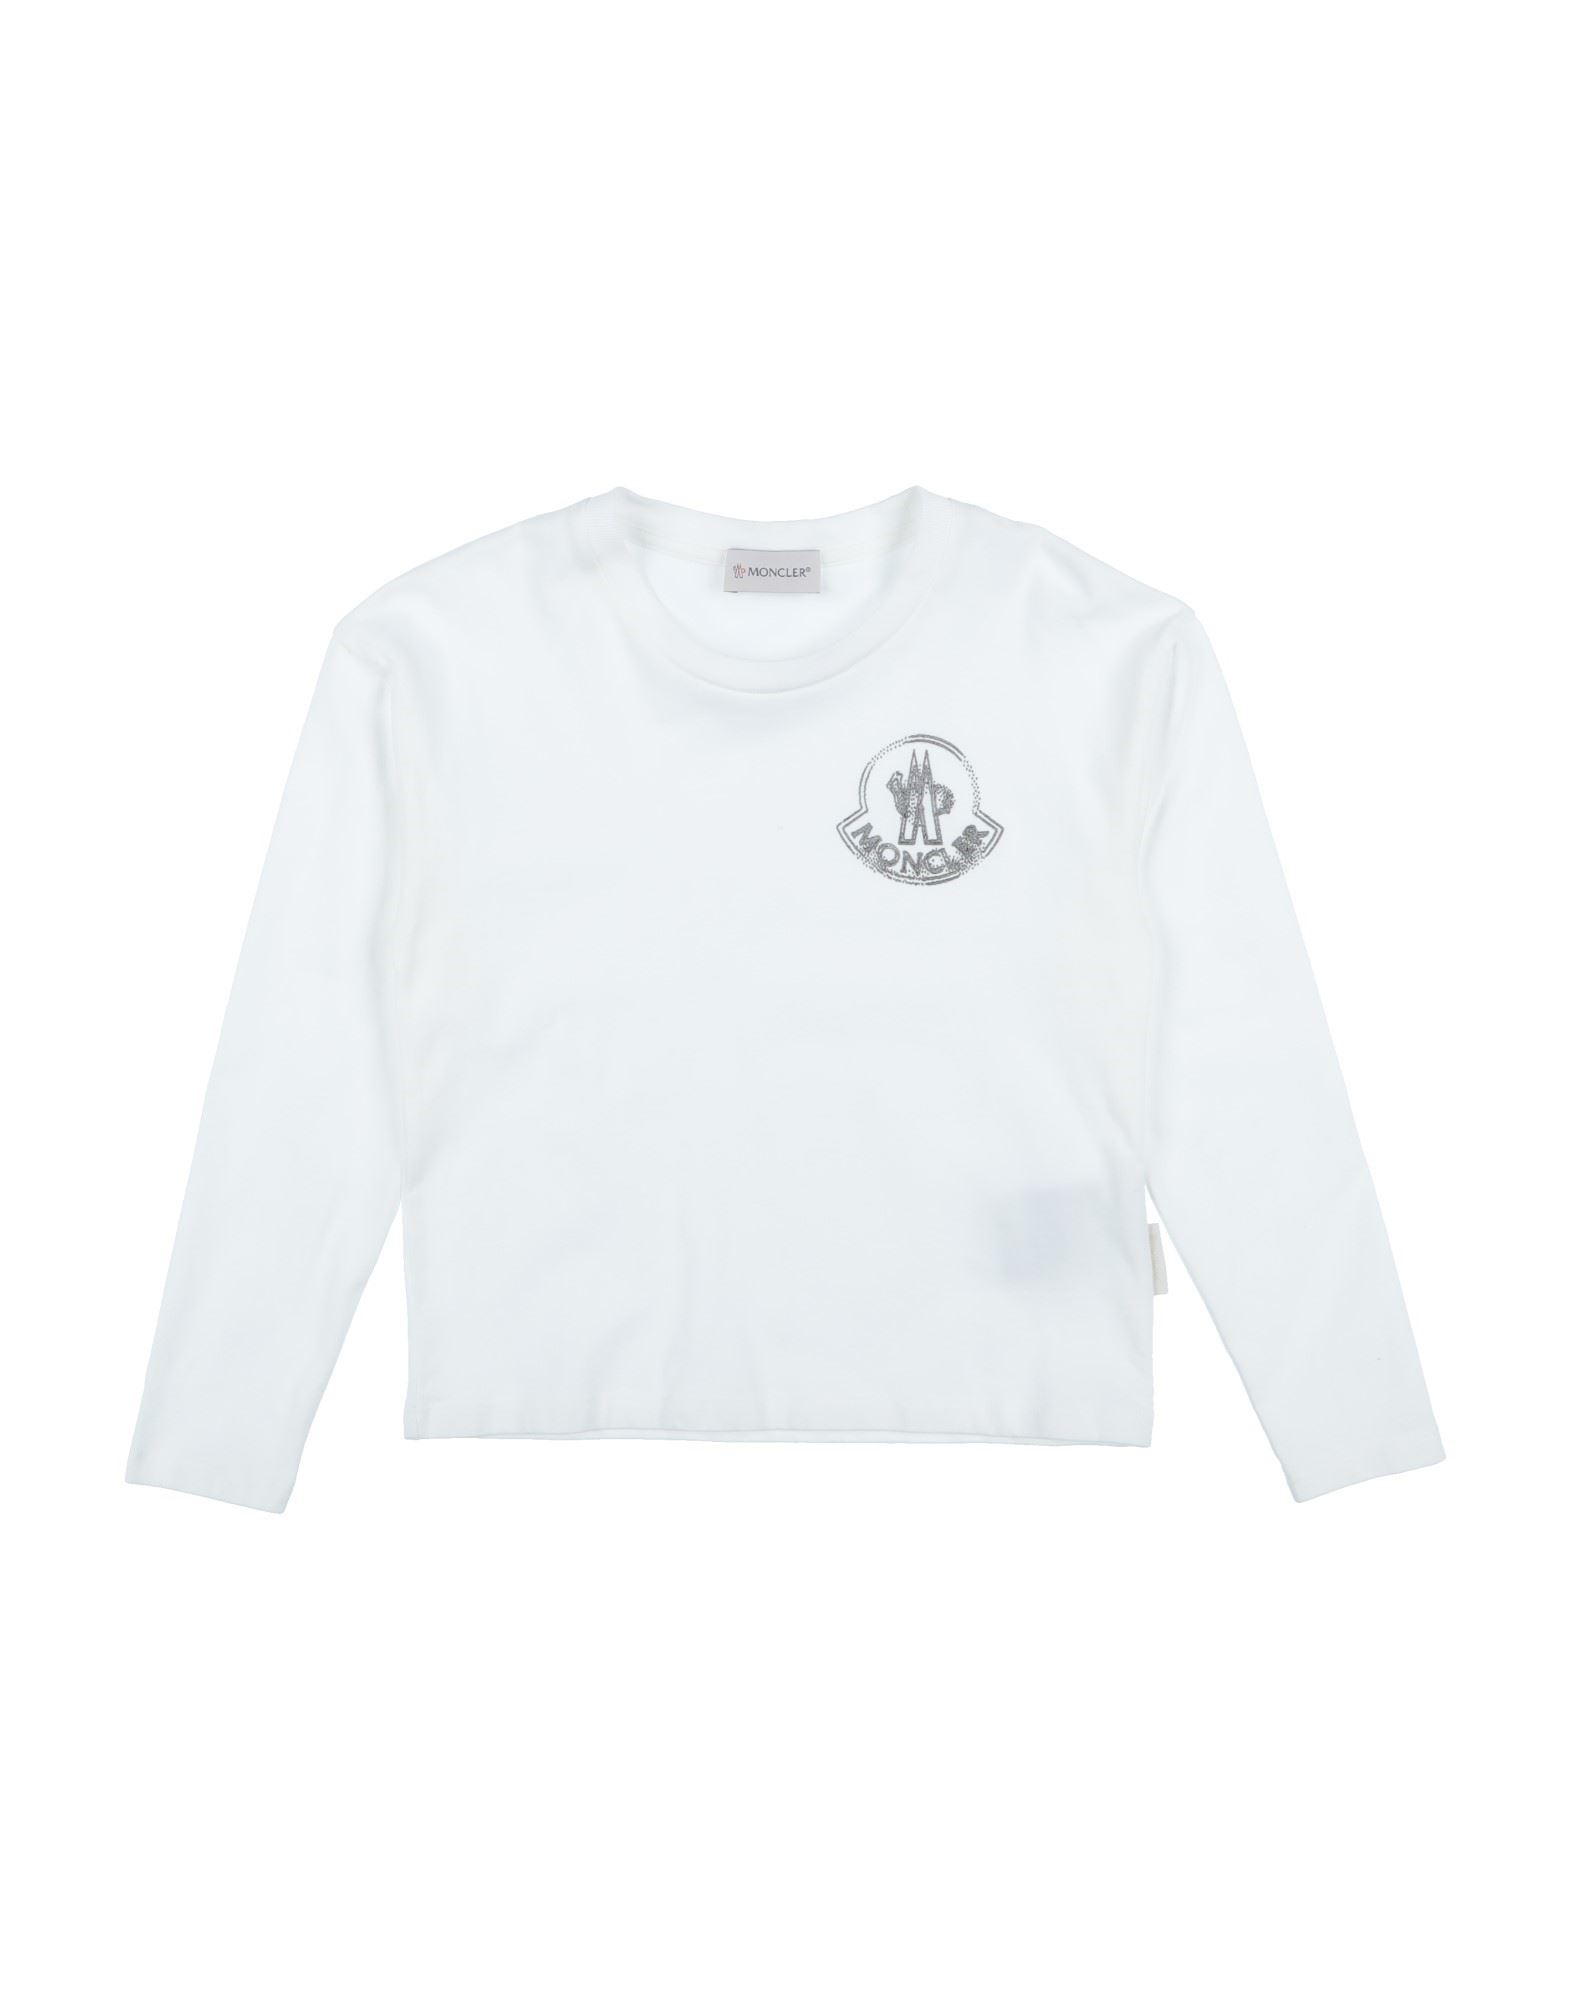 モンクレール(MONCLER) レディースTシャツ・カットソー | 通販・人気